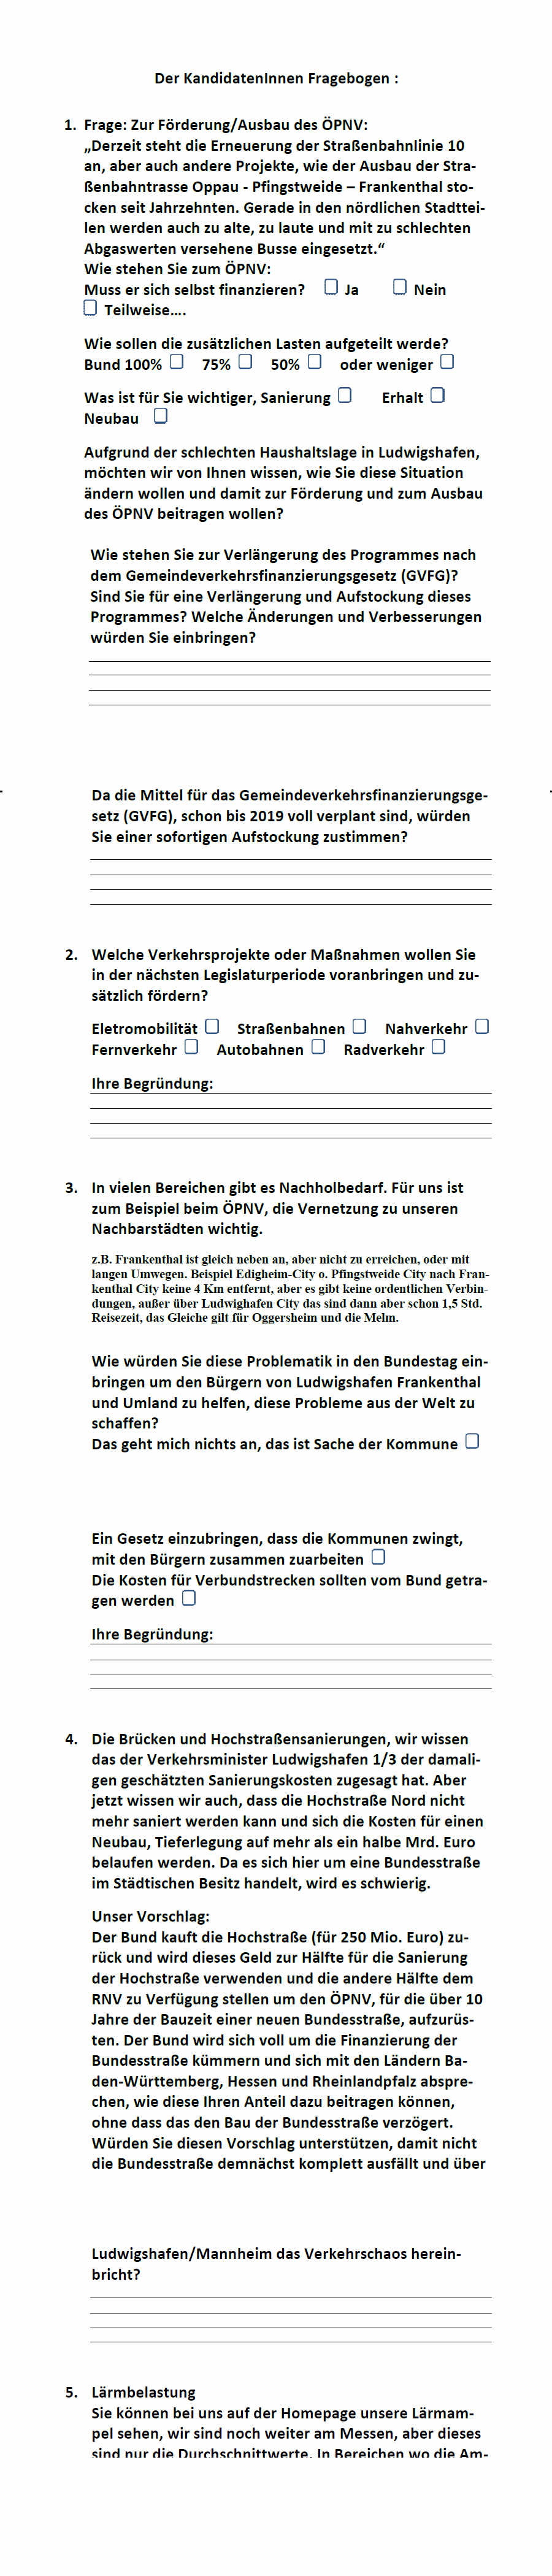 Fragebogen Bundestagswahl